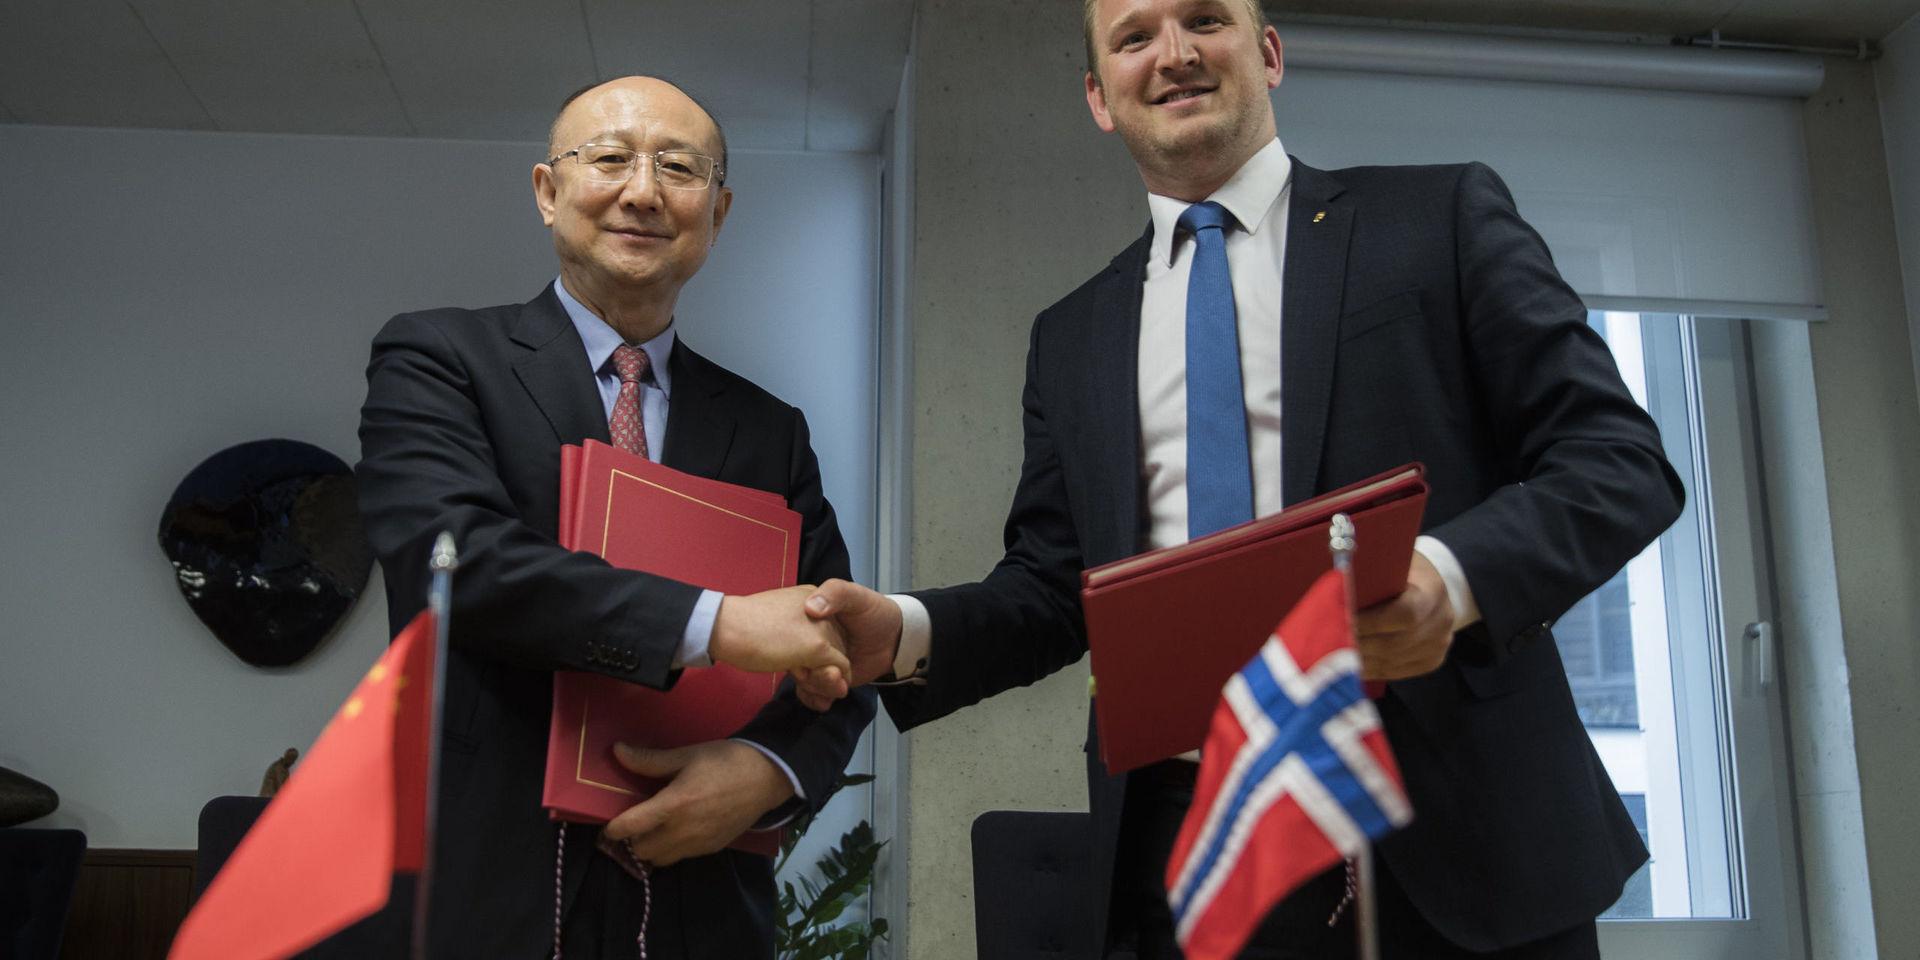 Norge levererar stora mängder tjursperma till Kina. Här skriver Norges tidigare lantbruksminister Jon Georg Dale och Kinas minister Zhi Shuping under ett tidigt avtal om detta. Arkivbild från 2017.